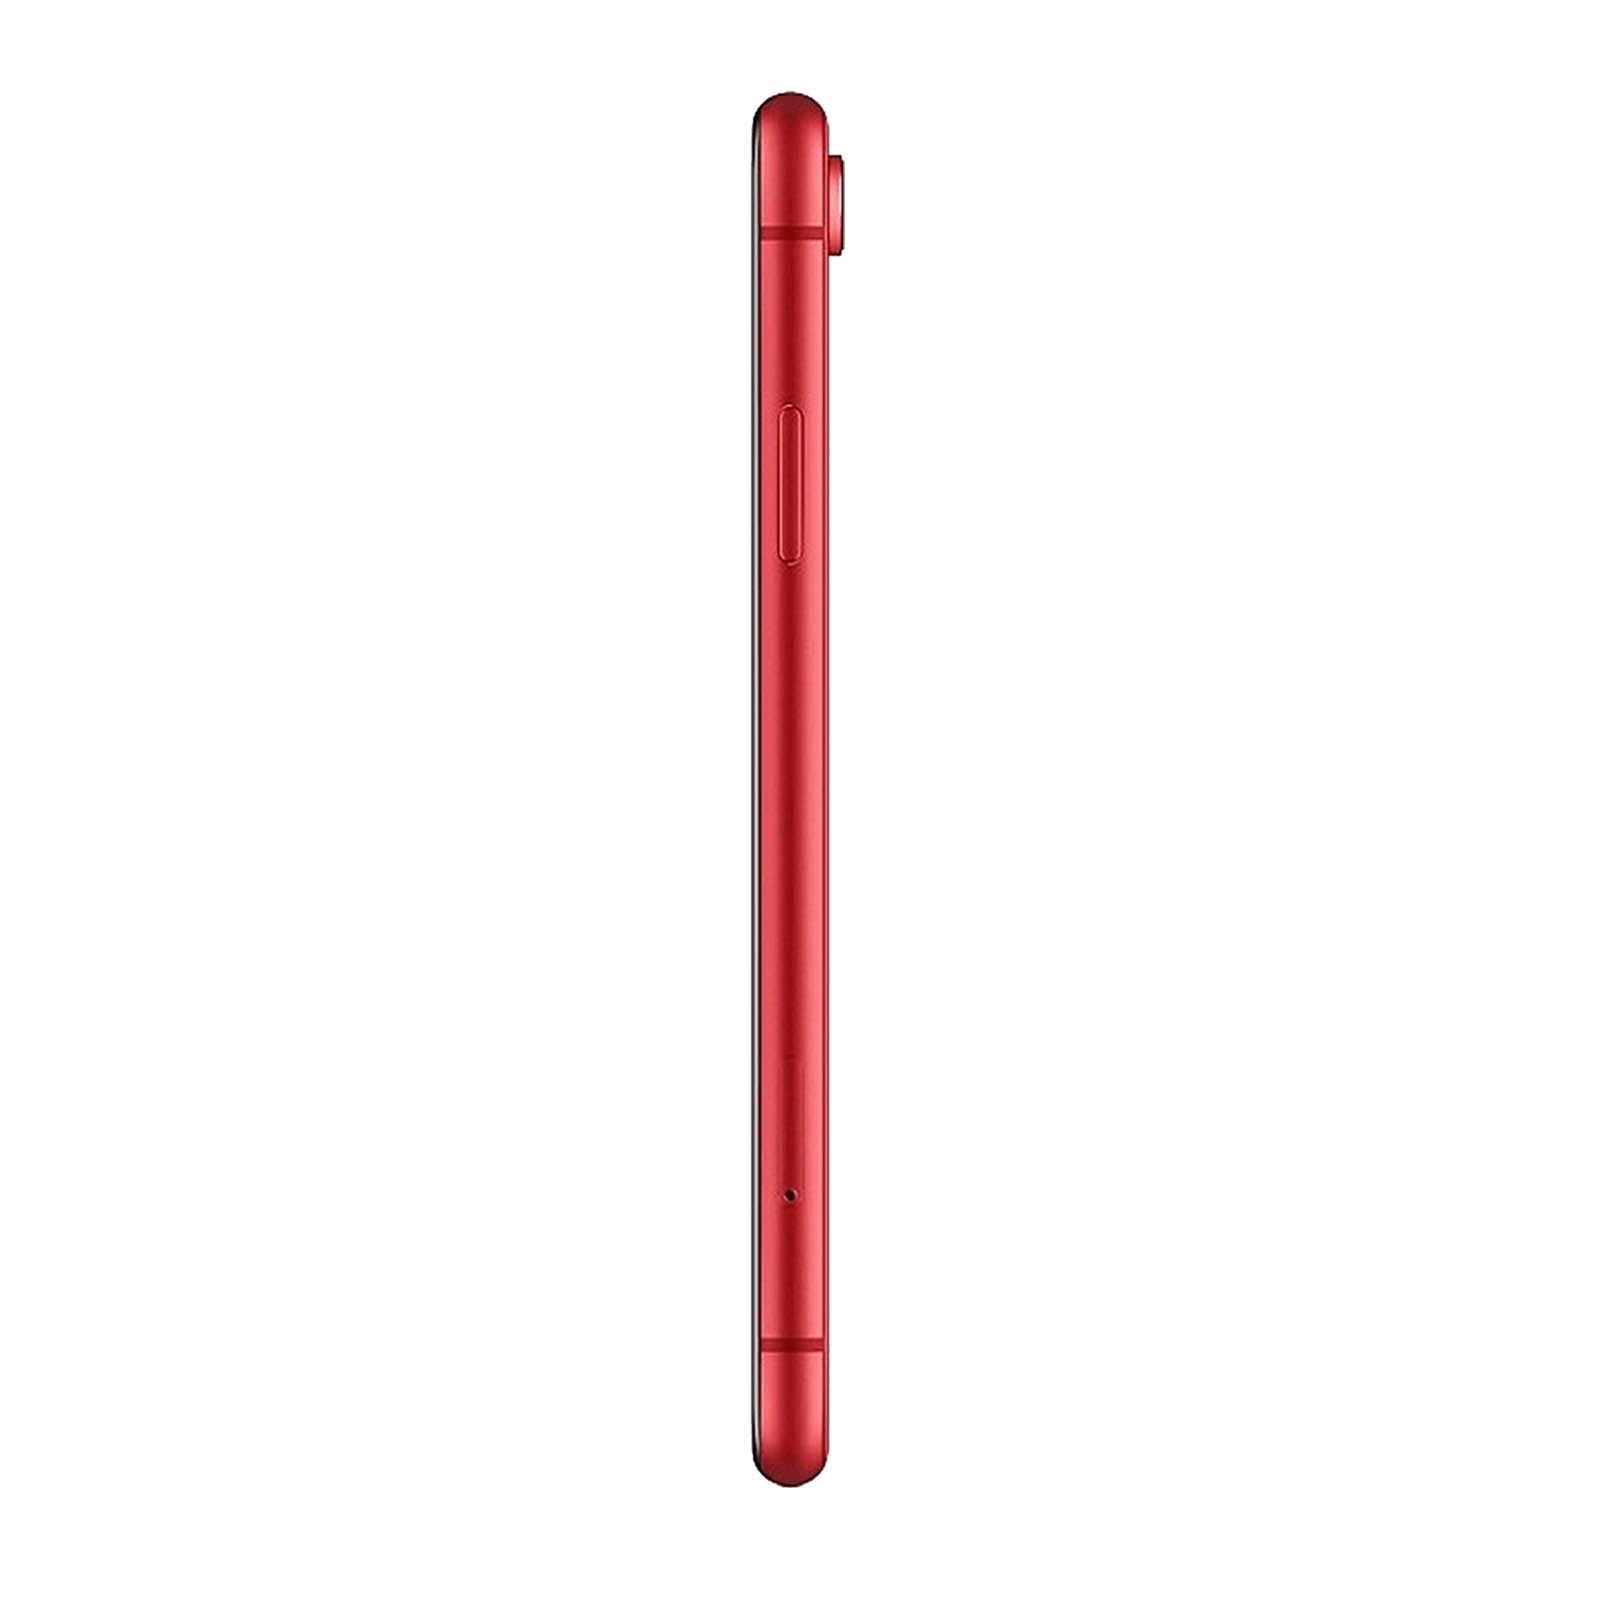 Apple iPhone XR 128GB Rosso Discreto Sbloccato